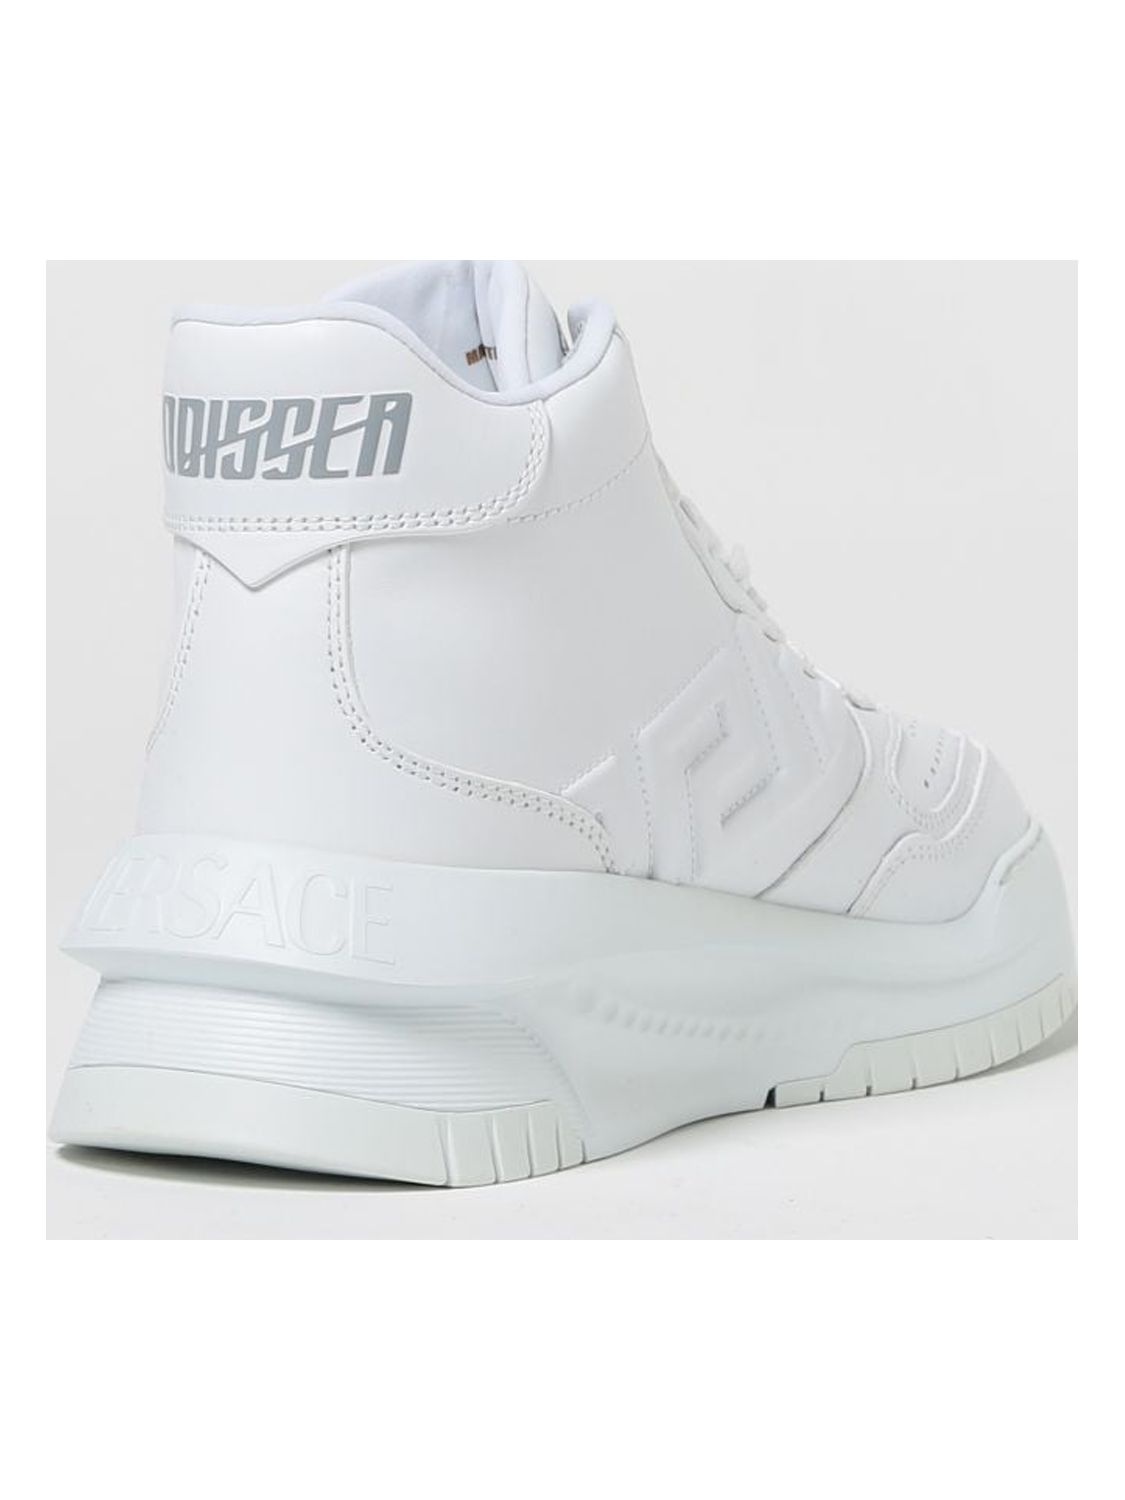 Versace Sneakers Men White Men - Walmart.com